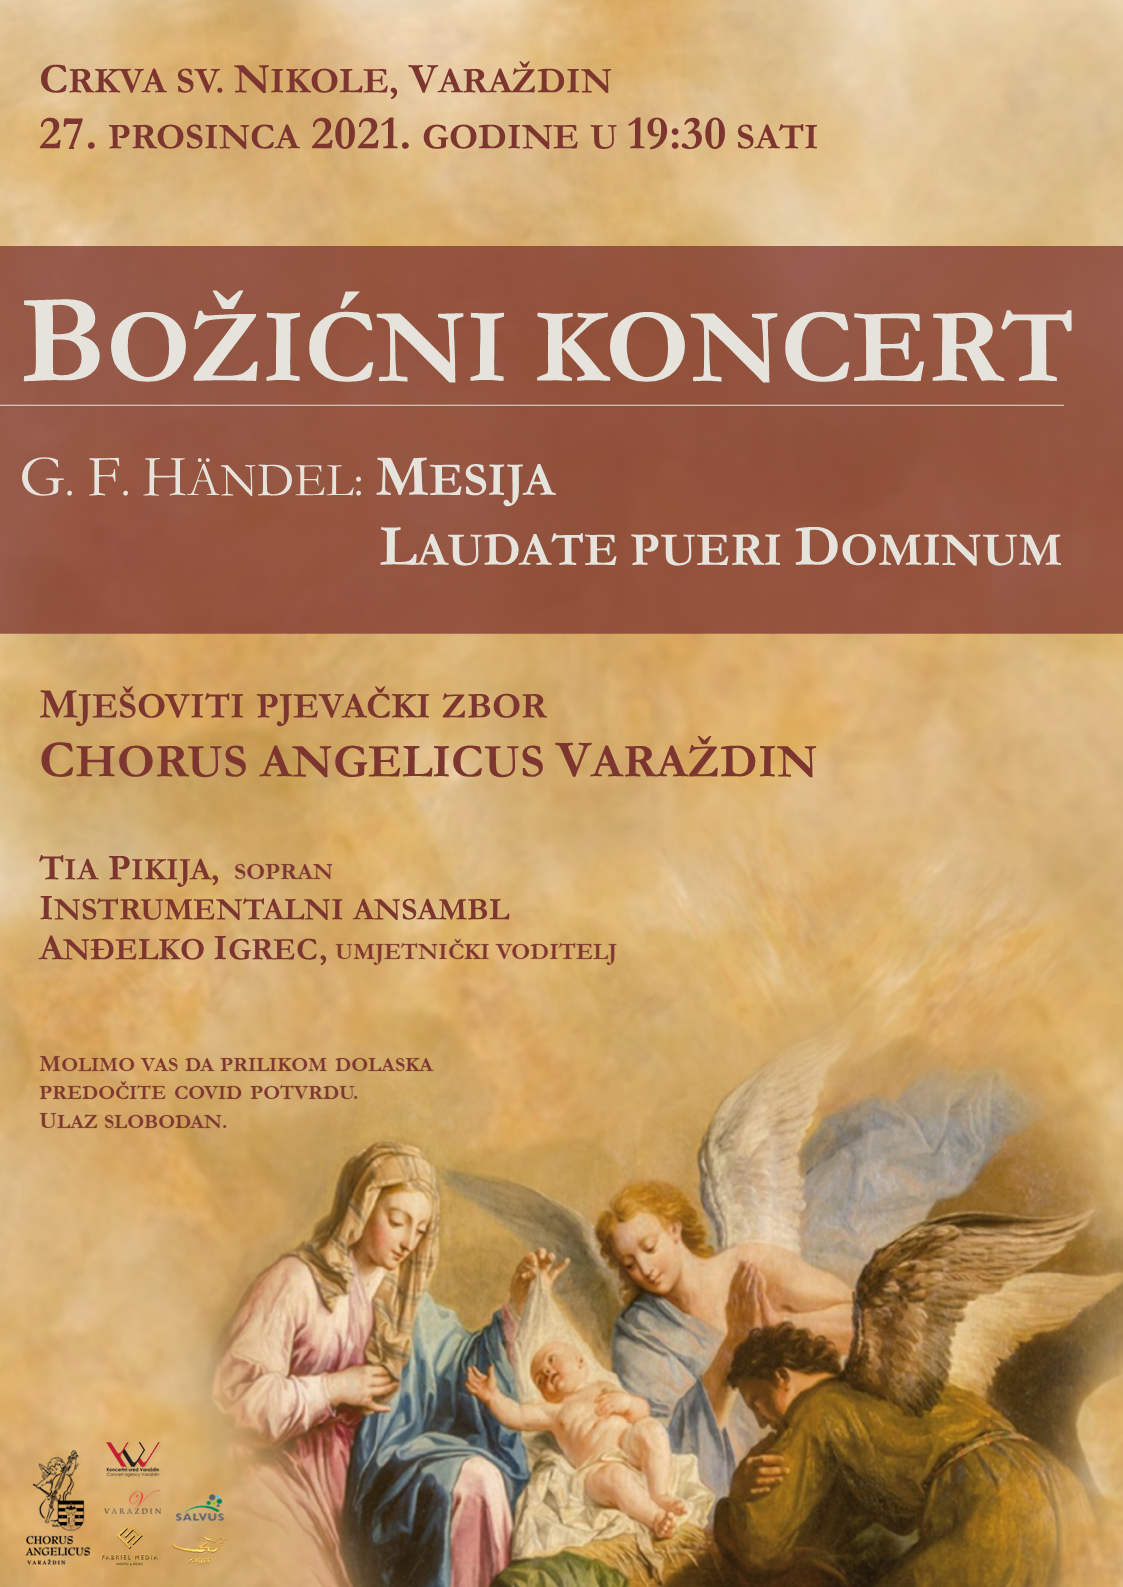 Božićni koncert mješovitog pjevačkog zbora Chorus Angelicus